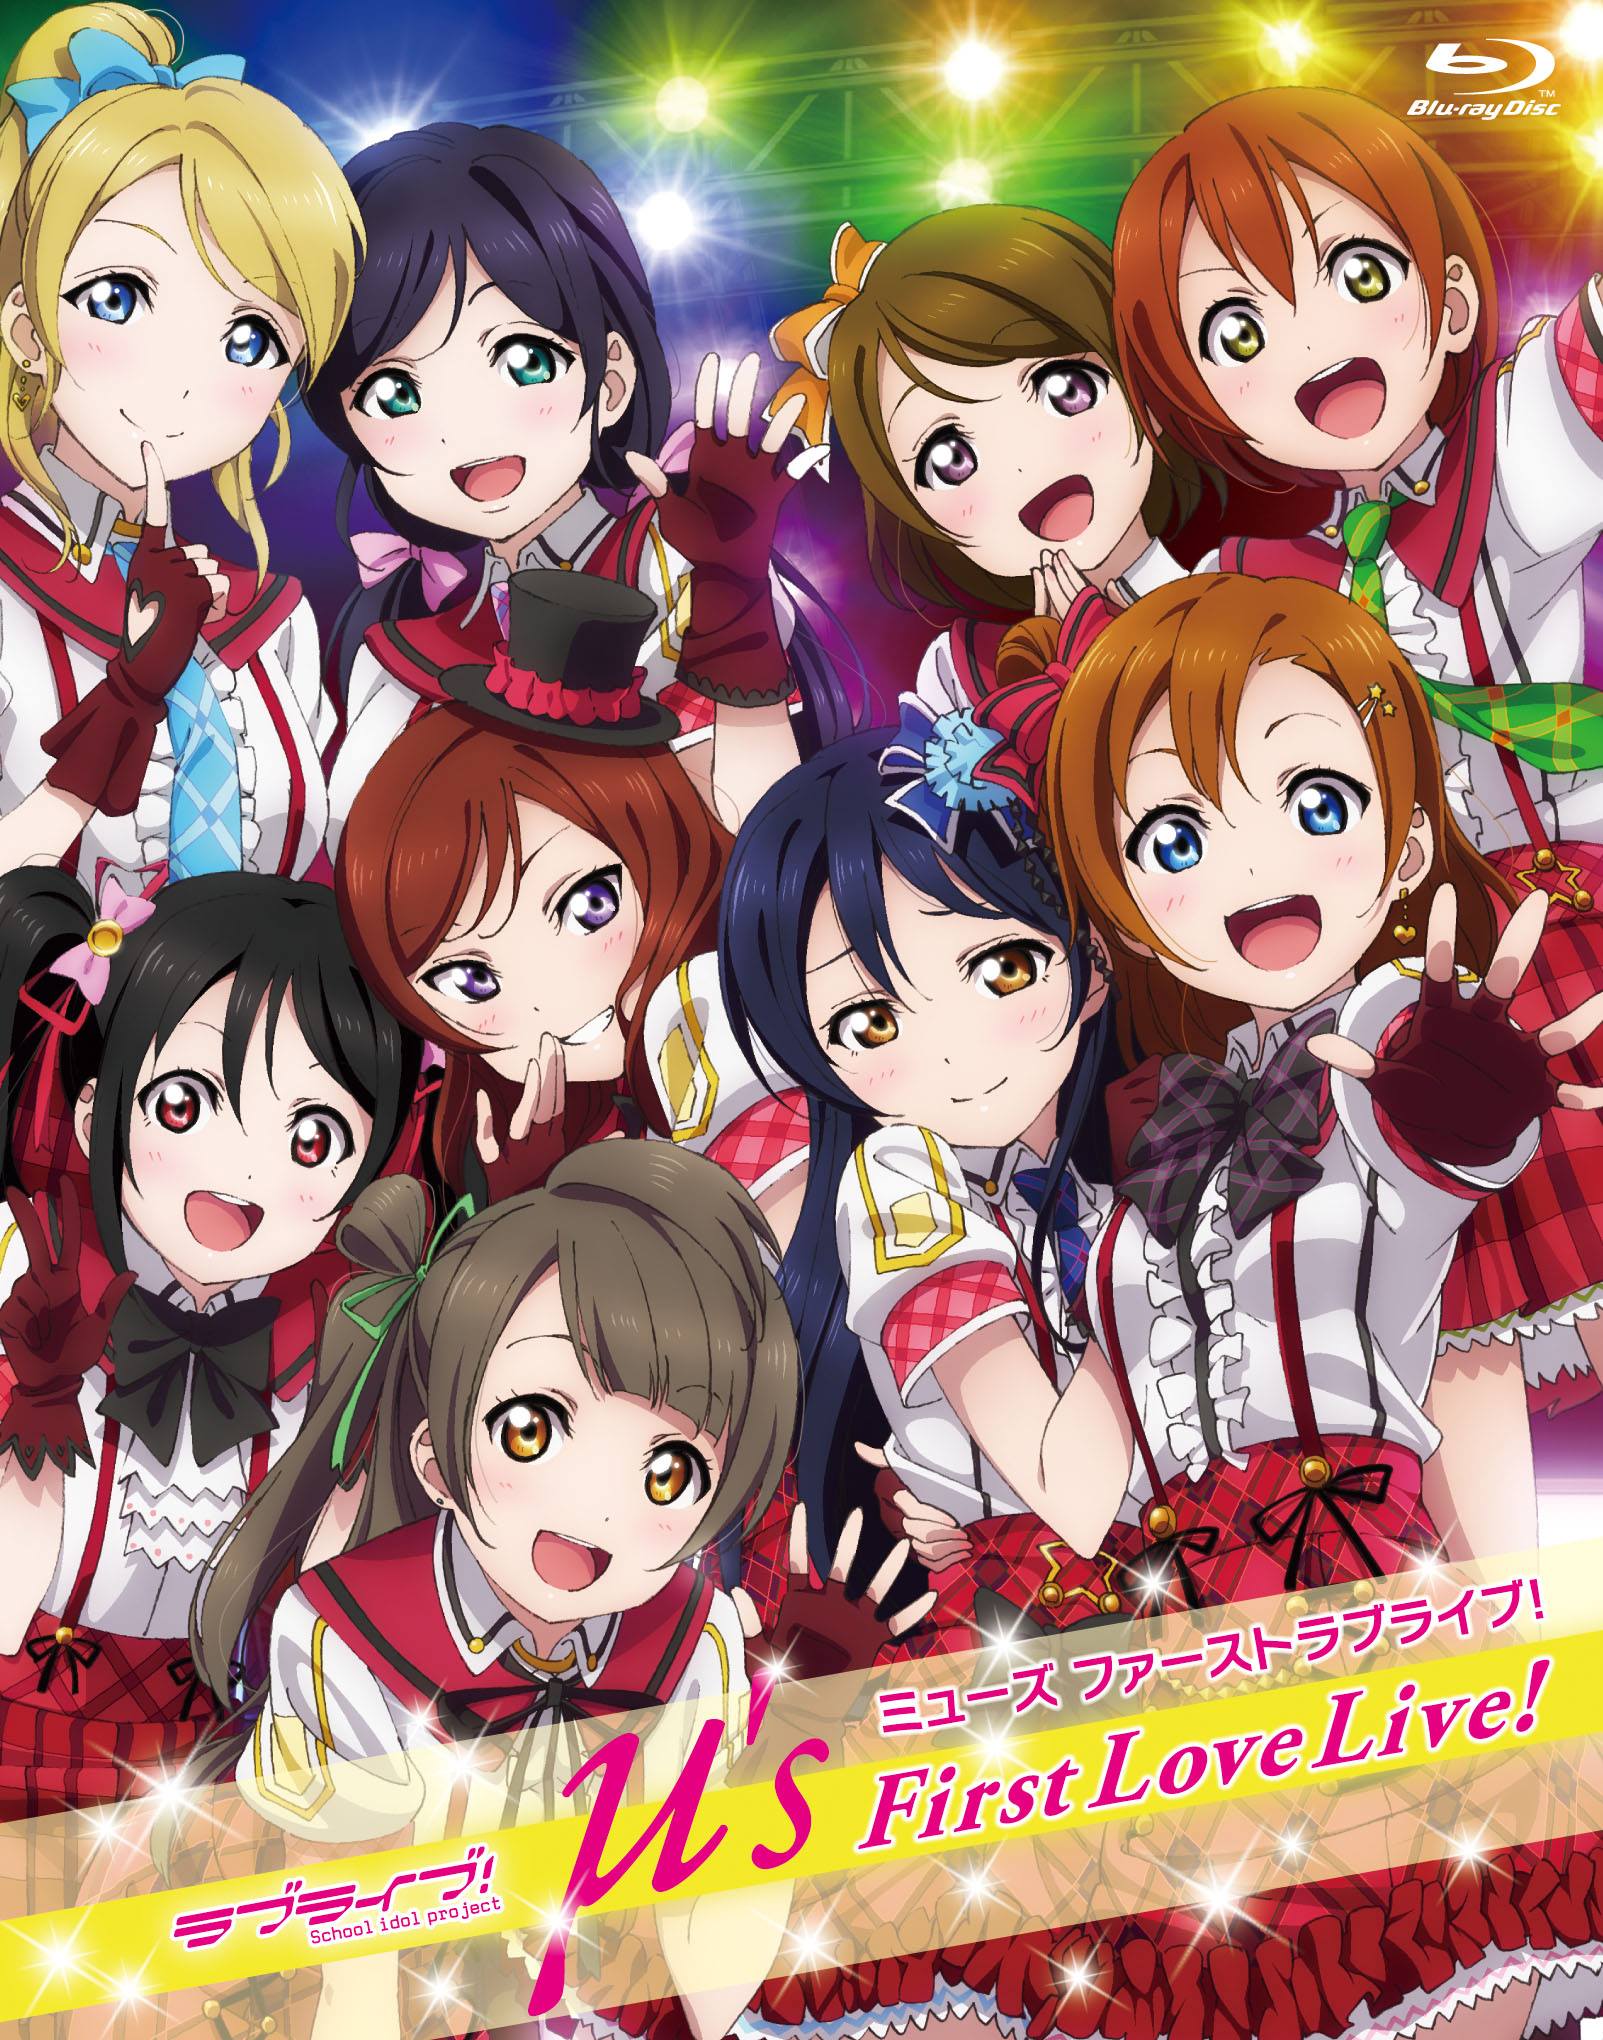 μ’s First Love Live!